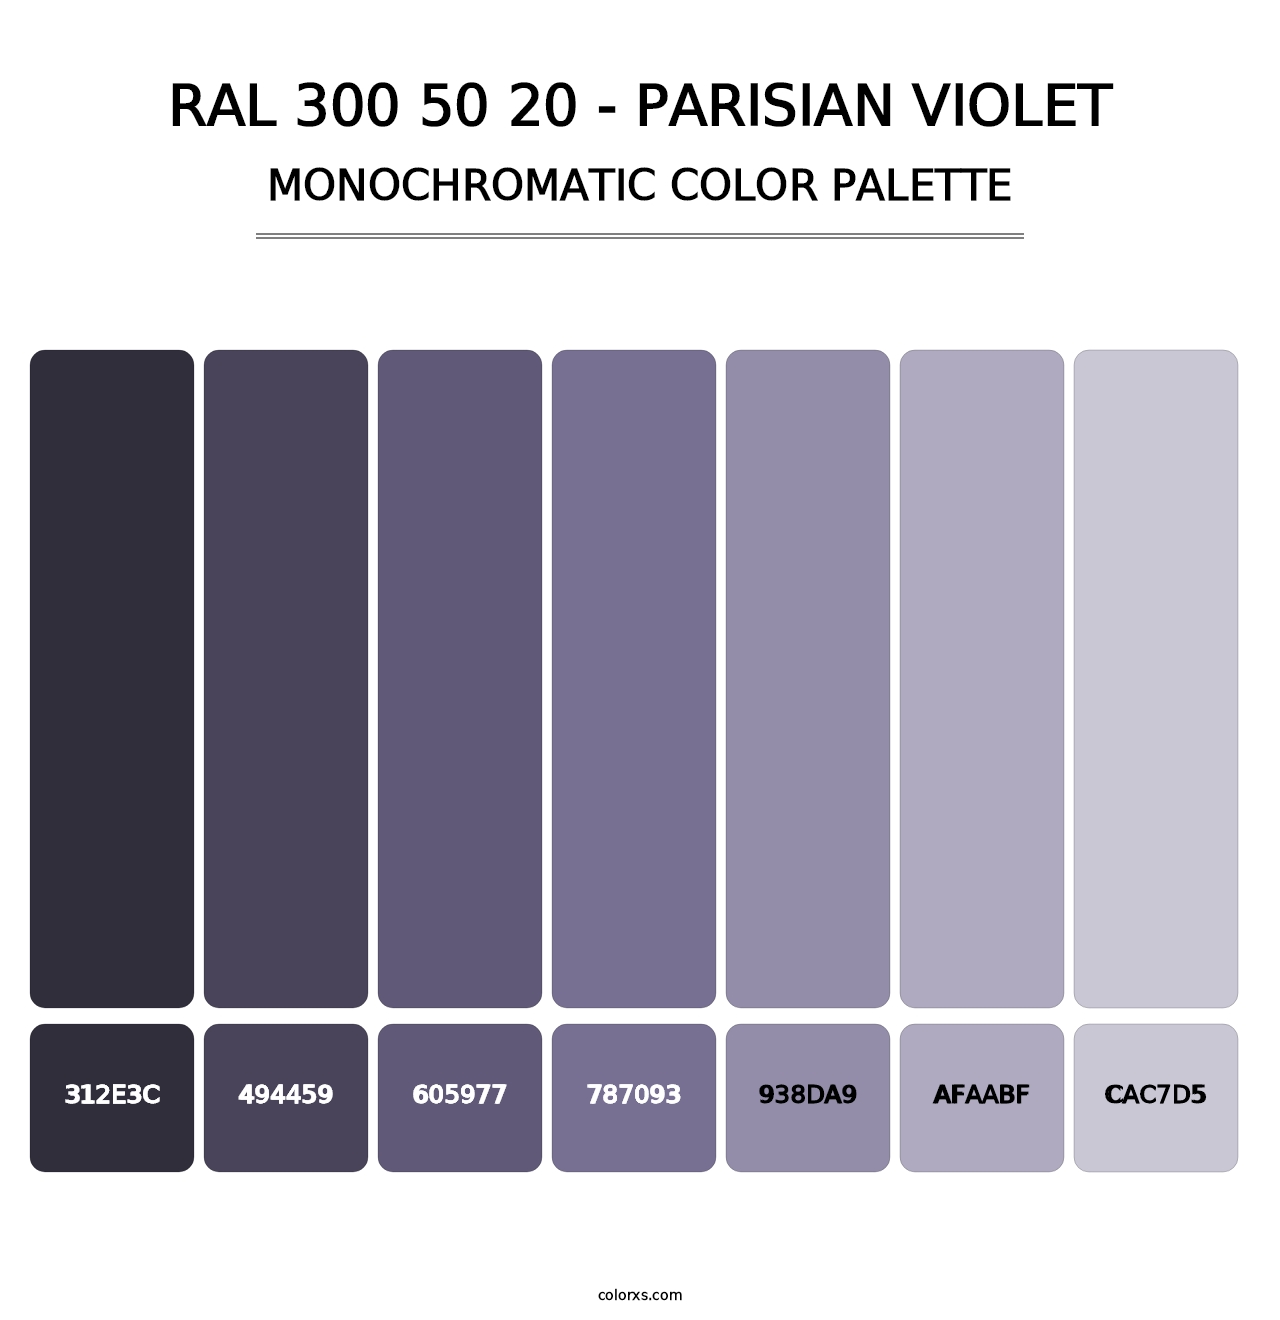 RAL 300 50 20 - Parisian Violet - Monochromatic Color Palette